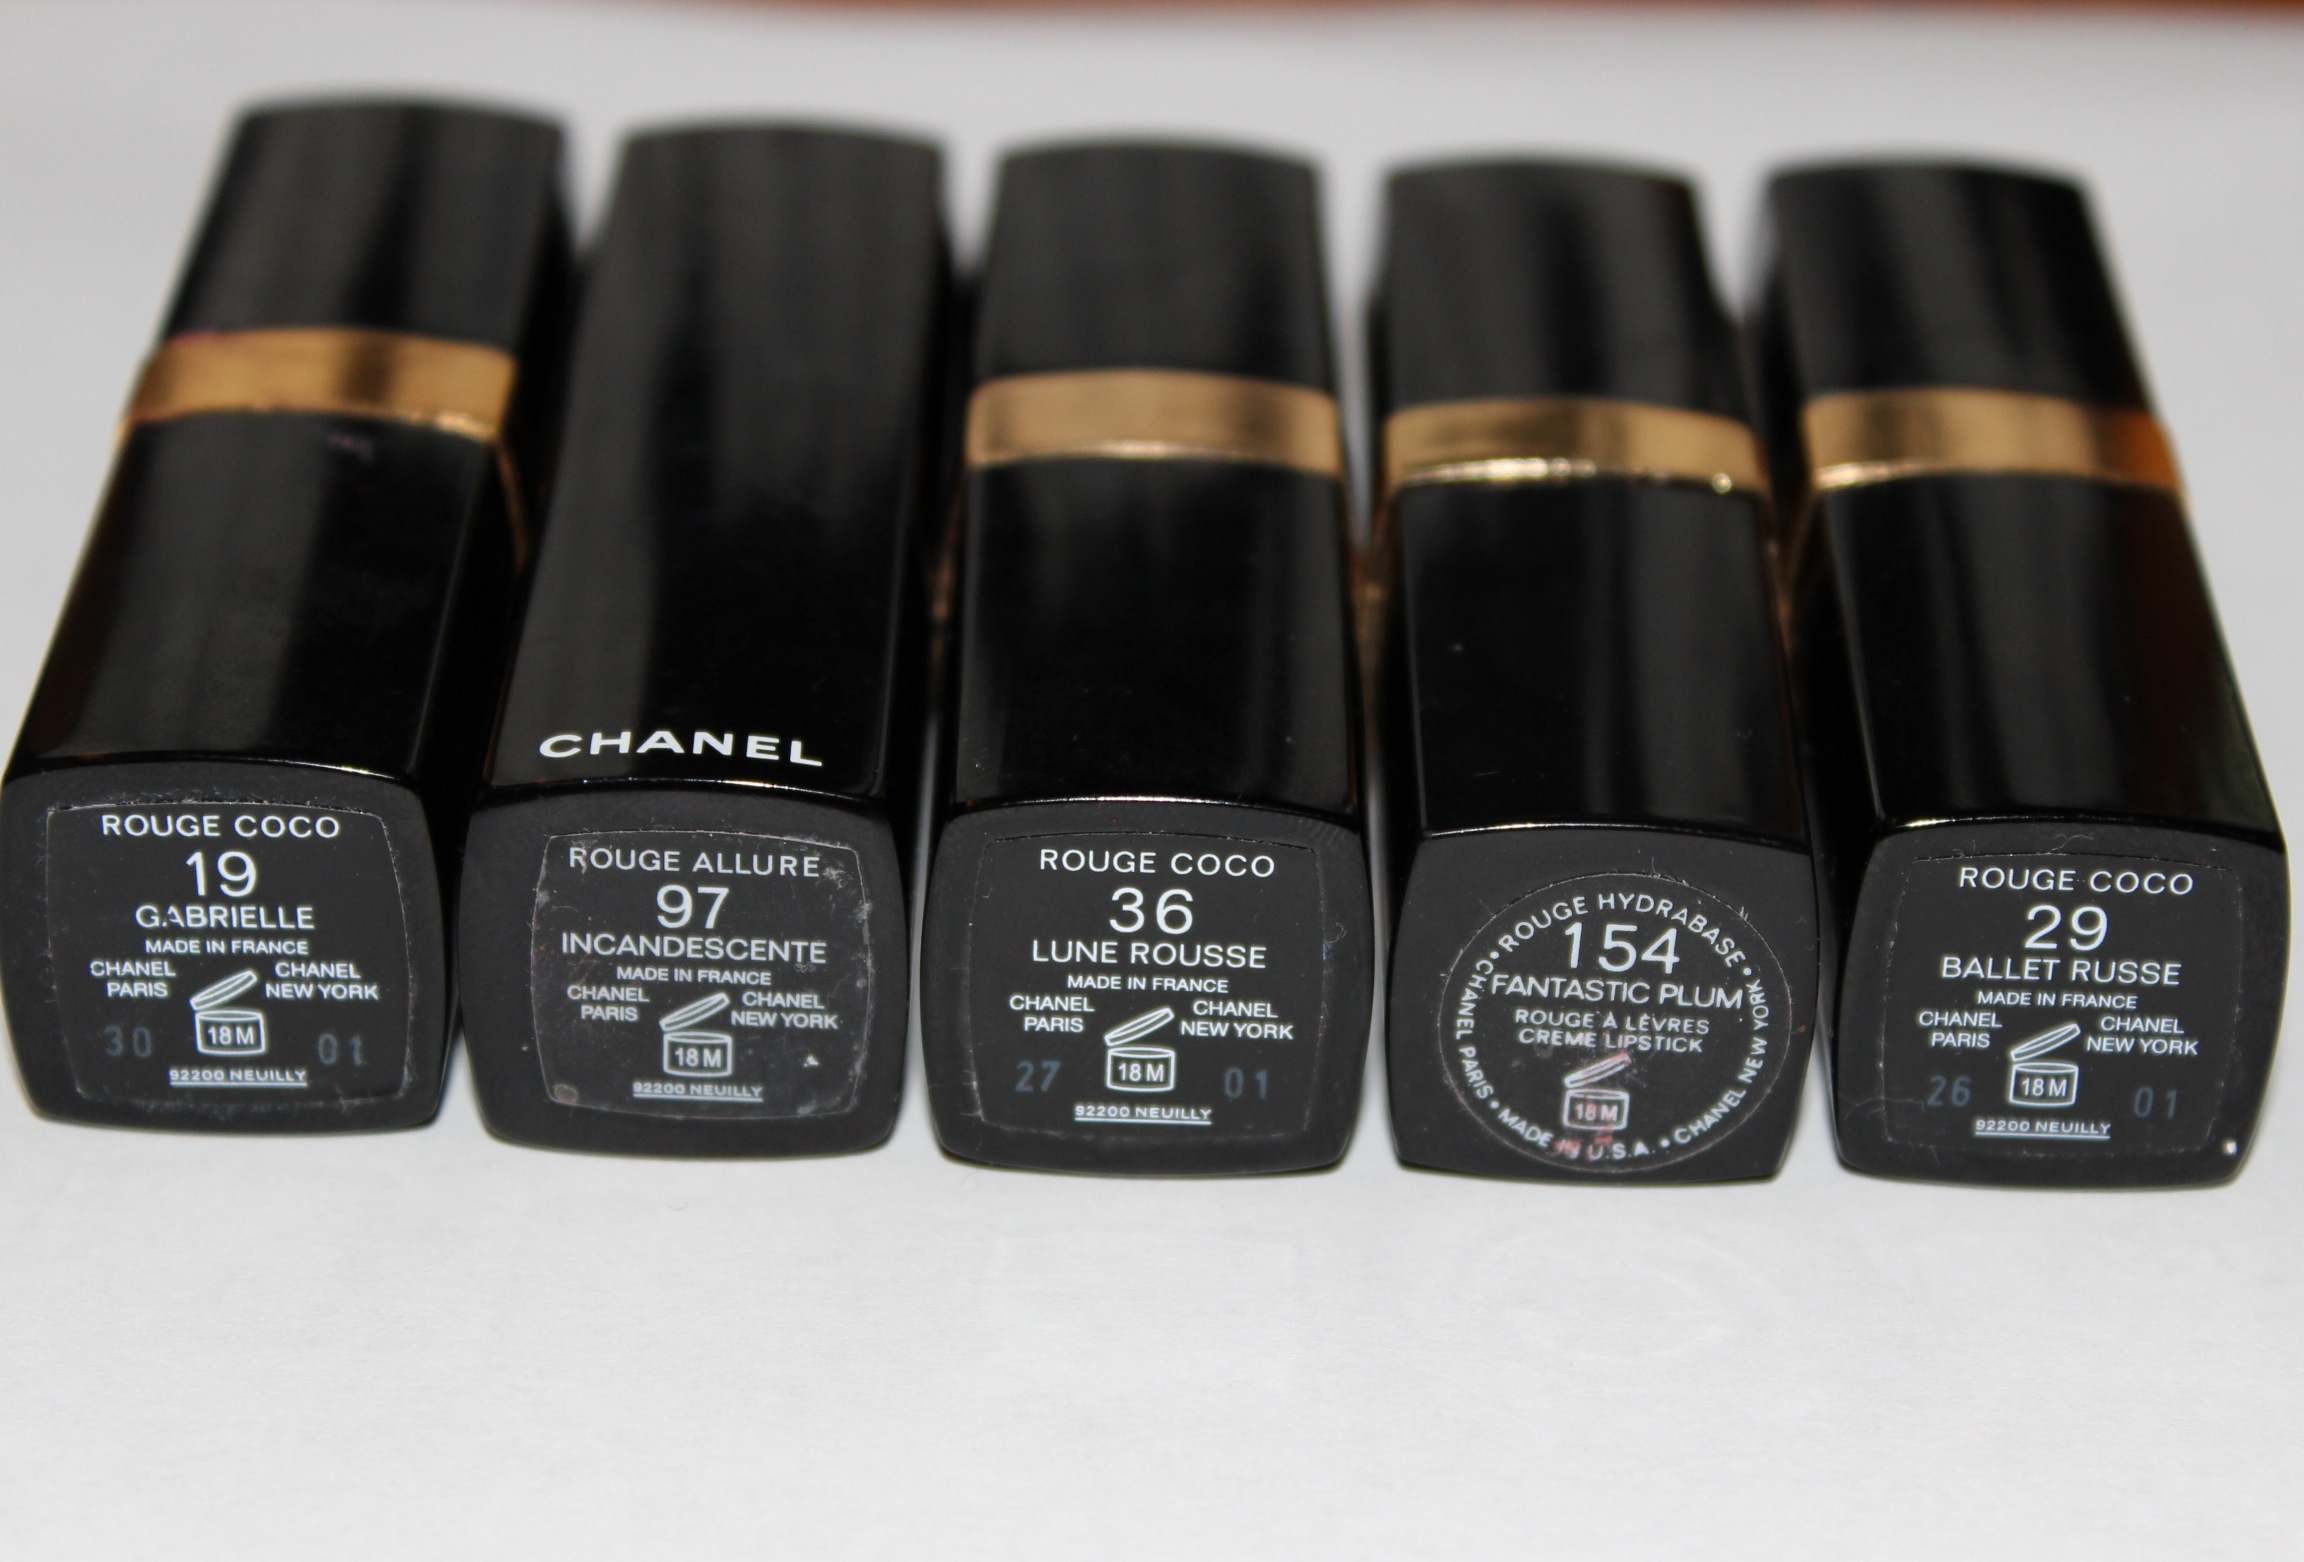 Chanel lipstick #132  Chanel lipstick, Lipstick, Beauty